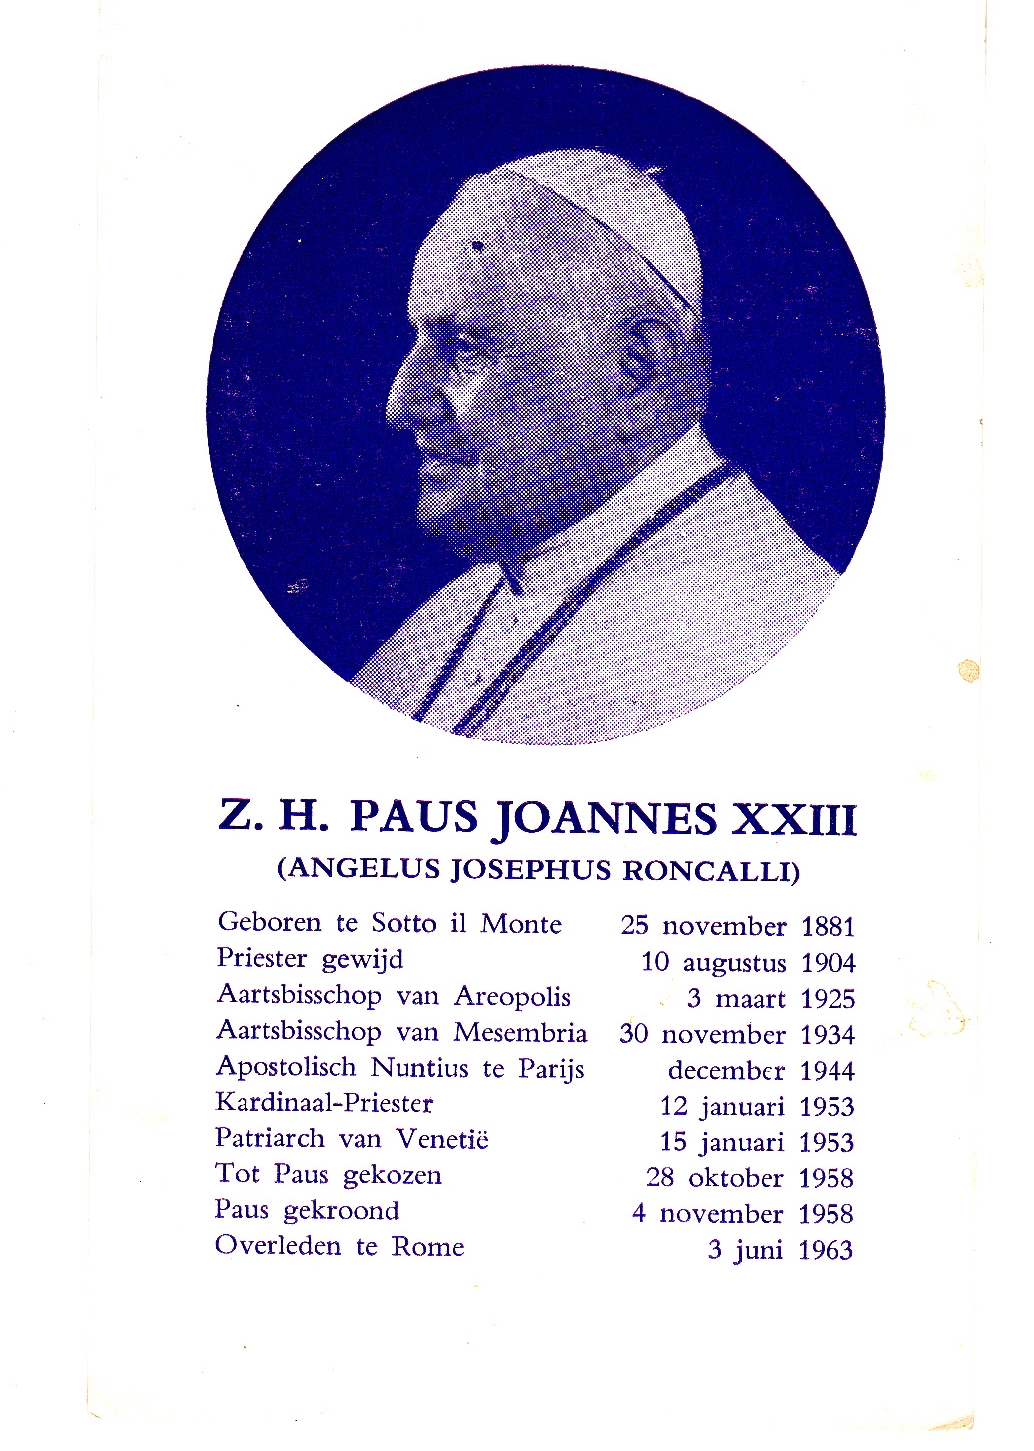 Roncali Angelus Josephus (Paus Joannes XXII)